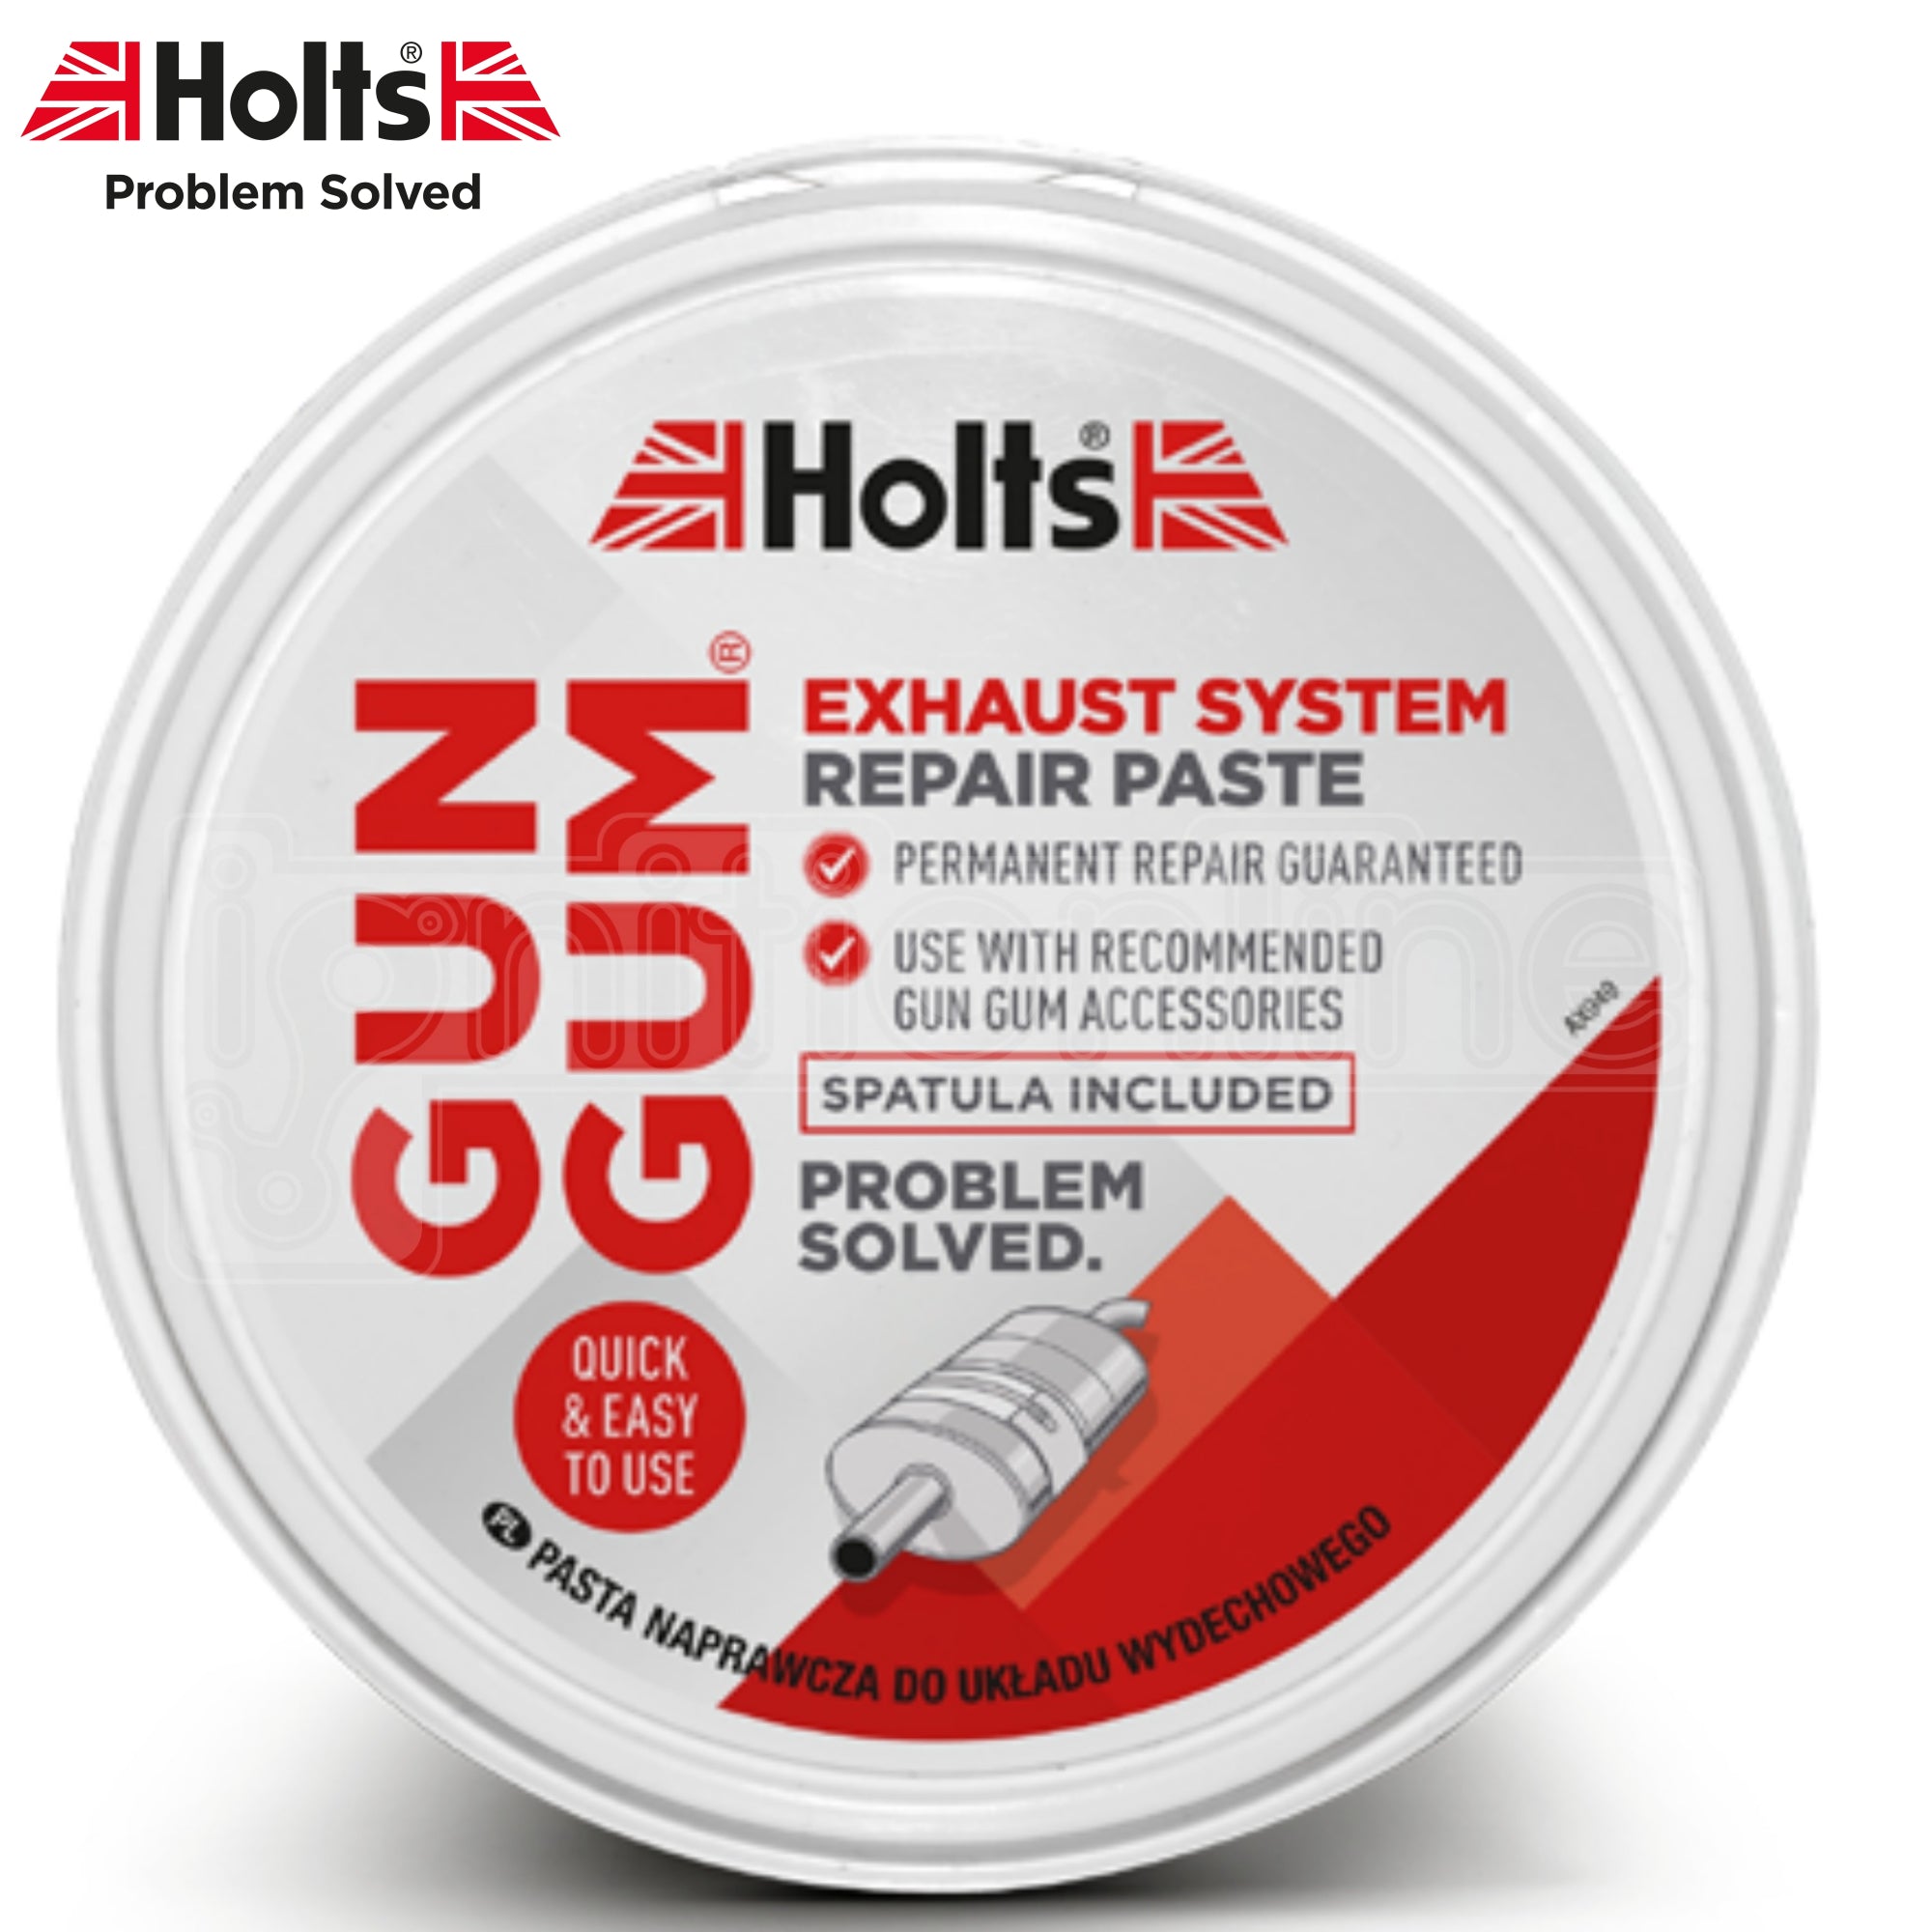 Holts Gun Gum Gas Tight Silencer Repair Paste 200g